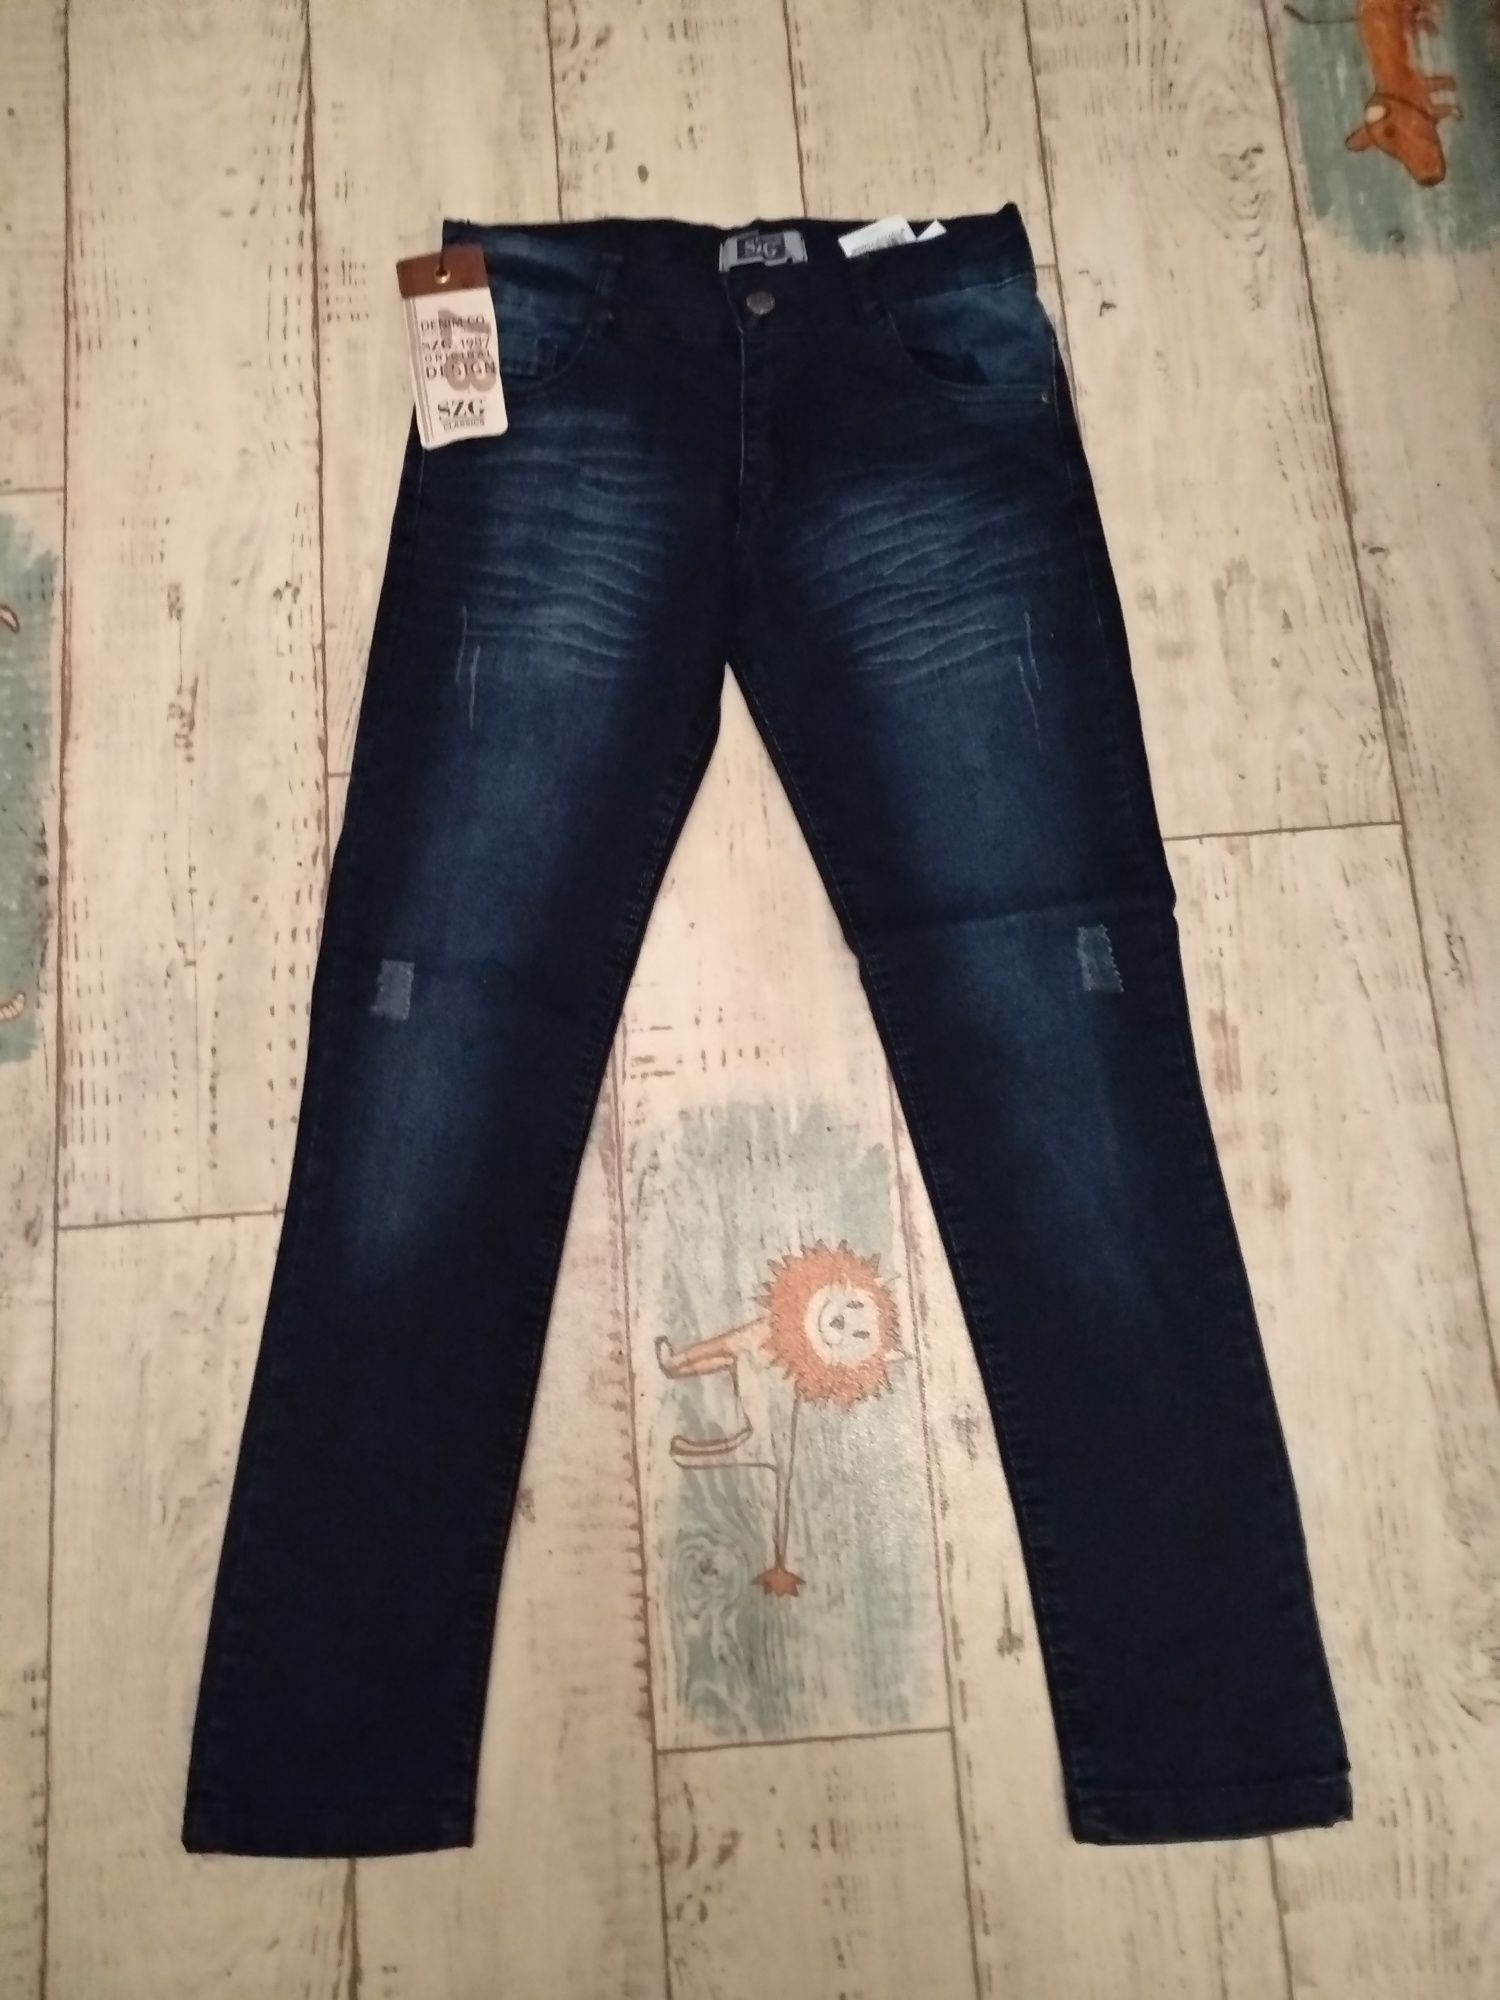 Новые джинсы для мальчика 8-10; 9-12лет,  (Турция)